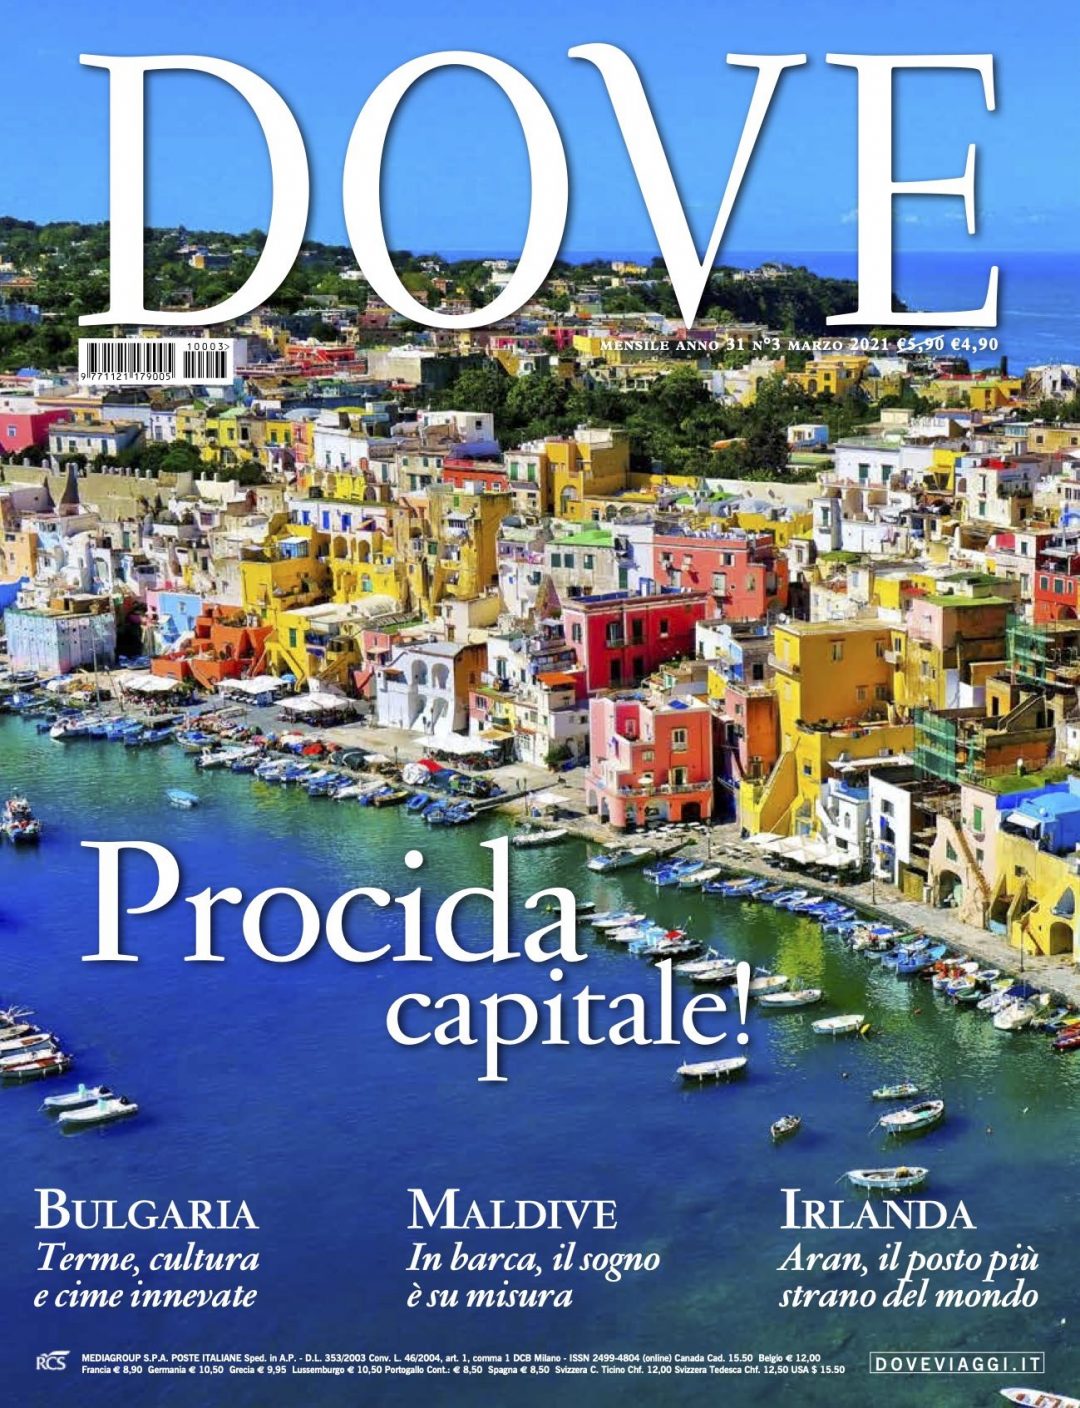 La cover della rivista dove marzo 2021 è dedicata all'isola di Procida